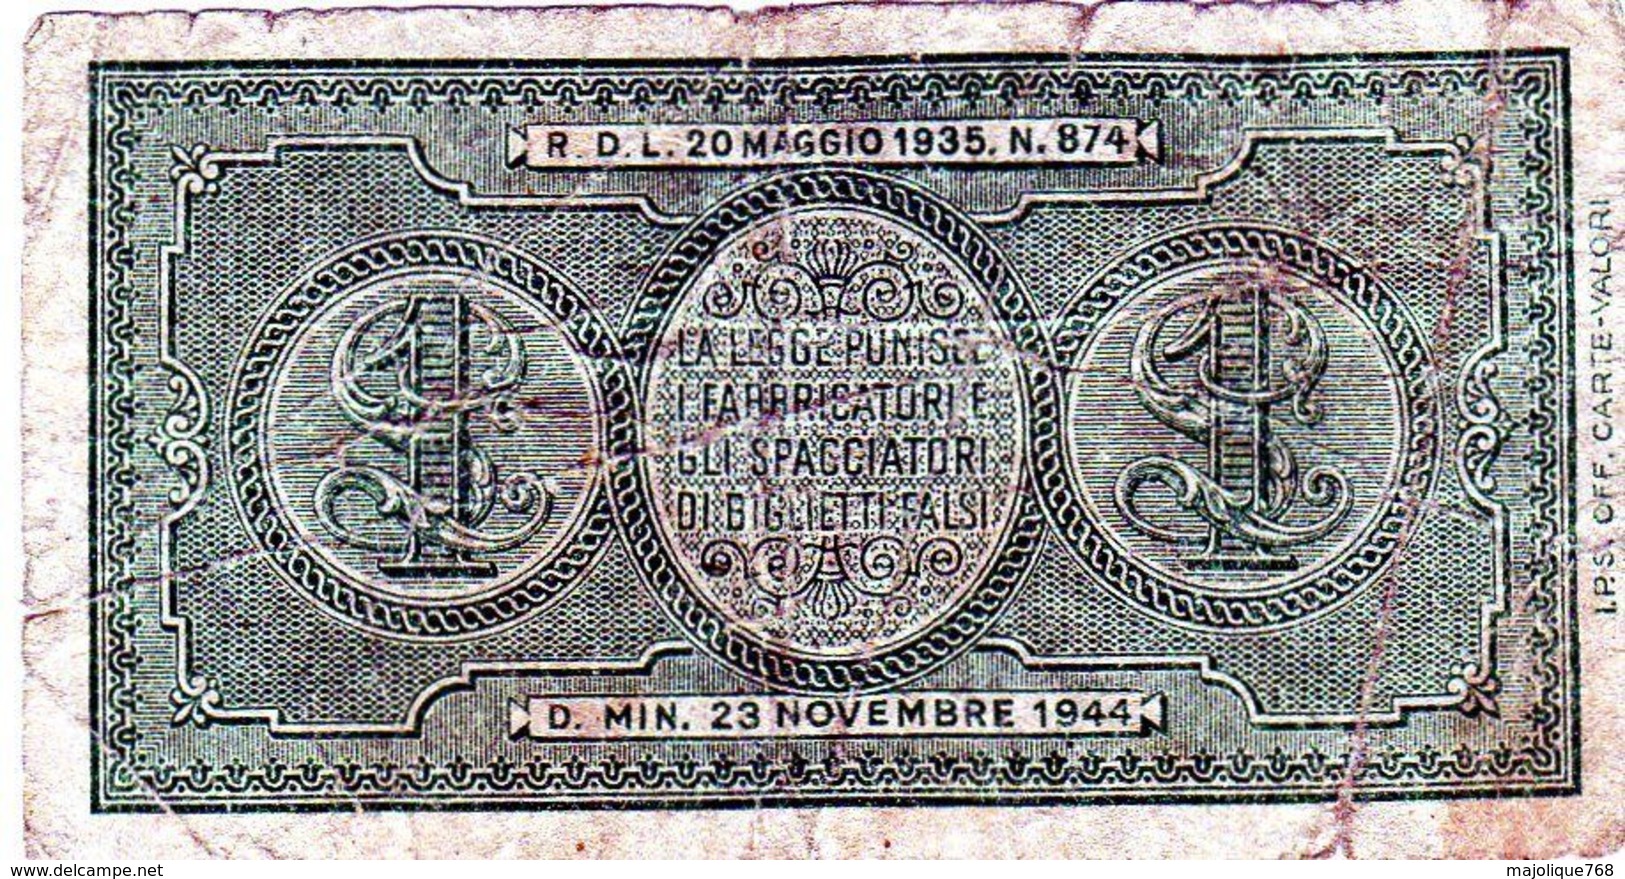 Italie: Billet De 1 Lire, Biglietto Di Stato, Una Lira, 1944 En B - - Italia – 1 Lira